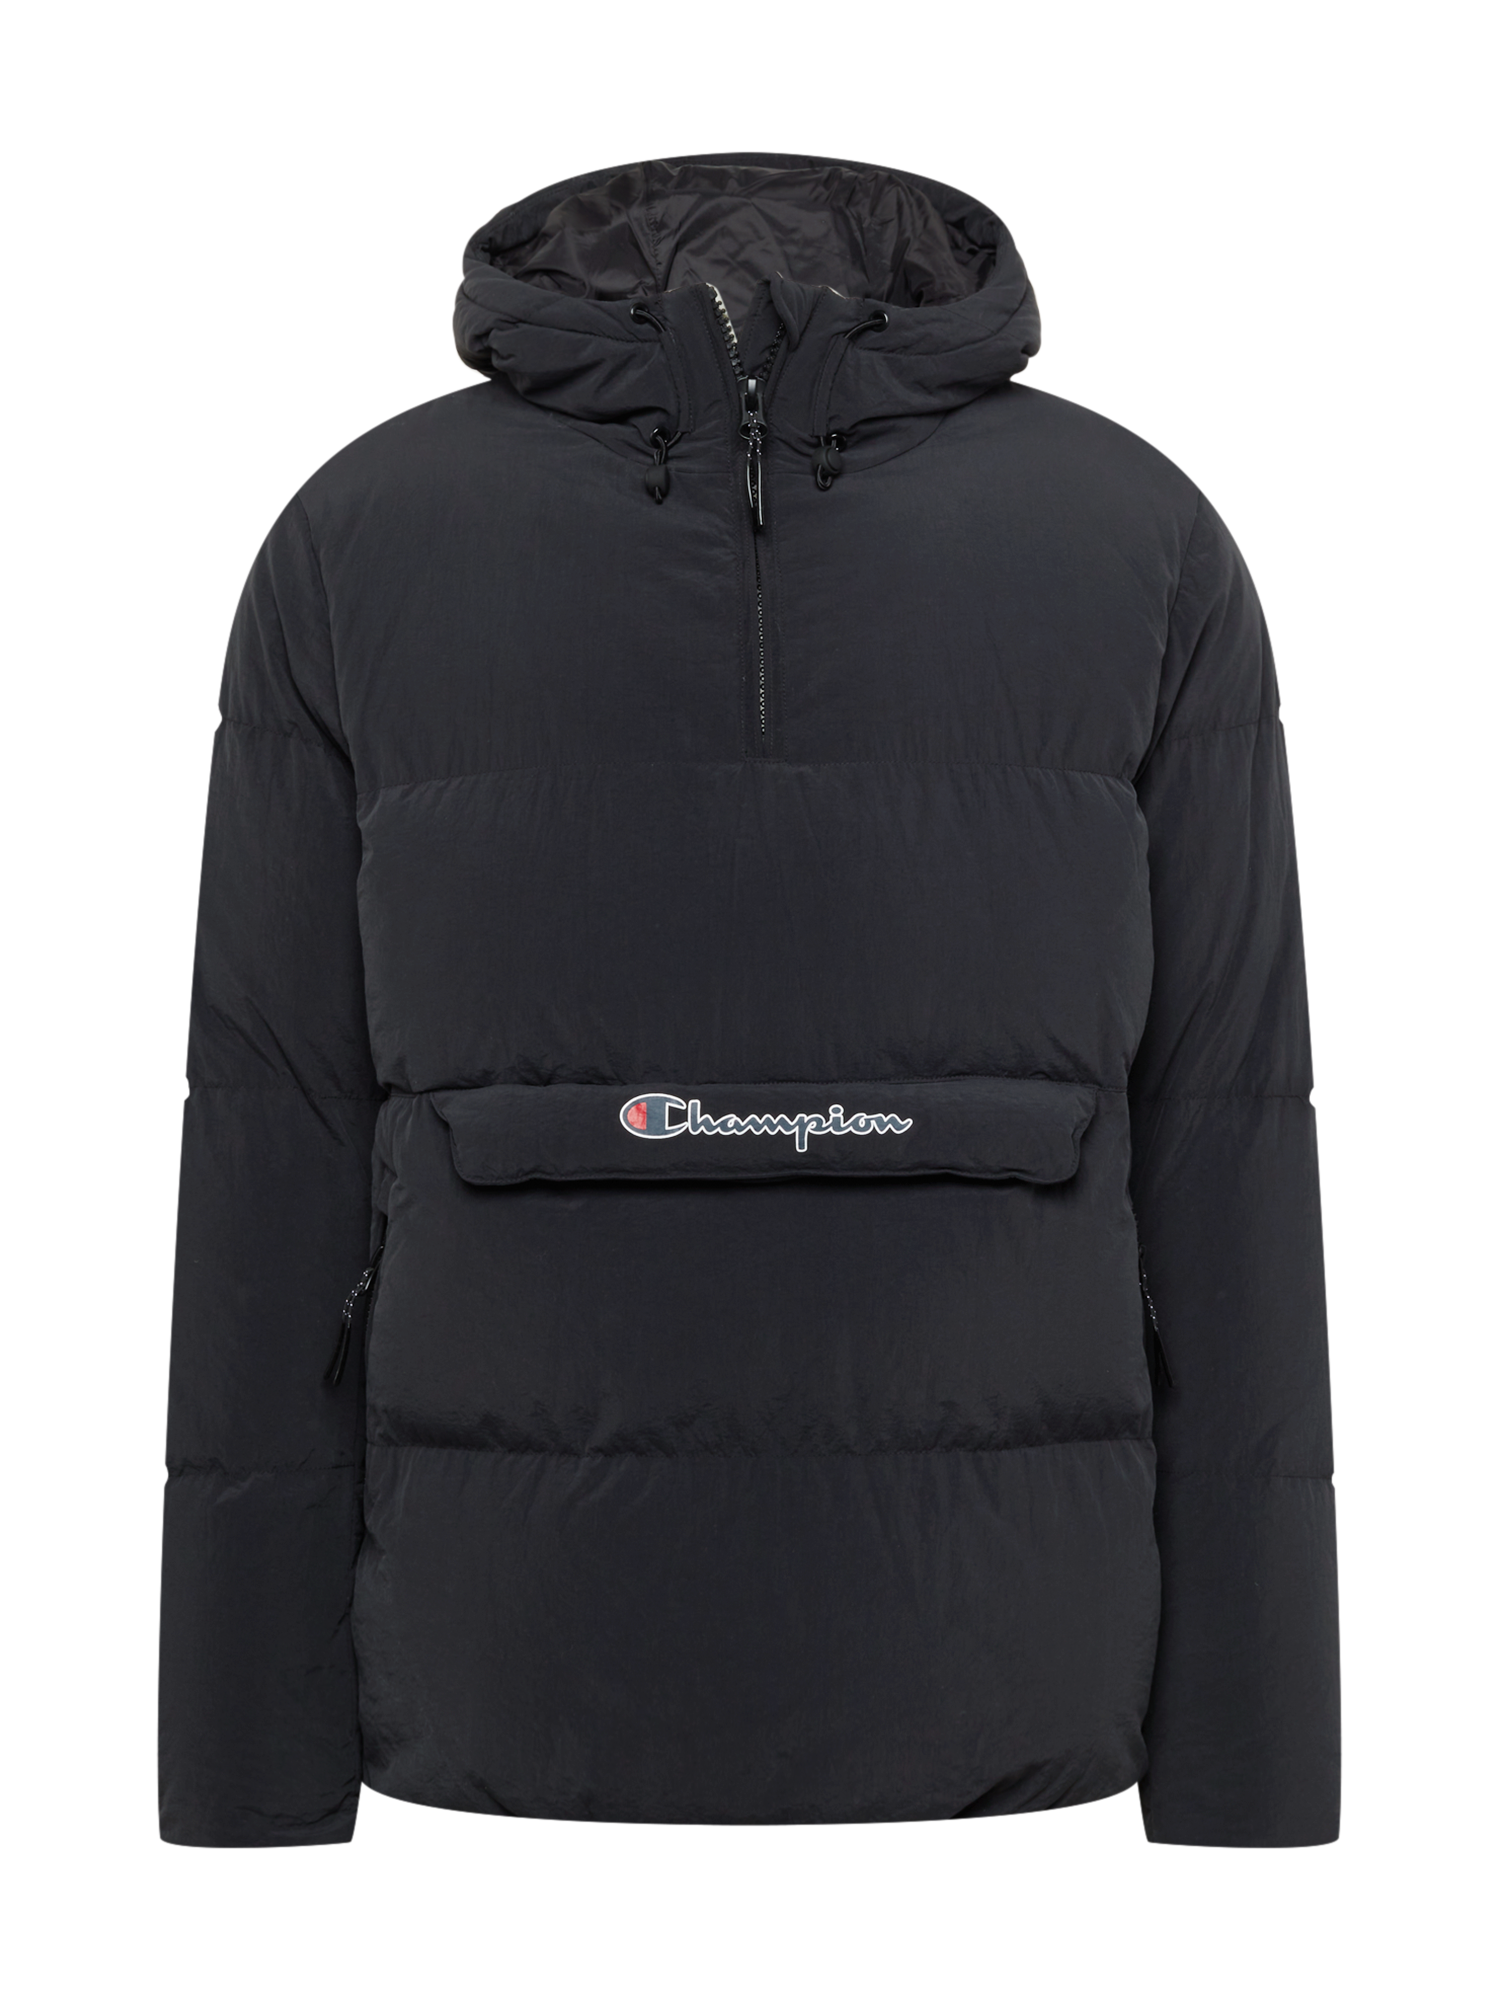 Odzież Mężczyźni Champion Authentic Athletic Apparel Kurtka zimowa w kolorze Czarnym 